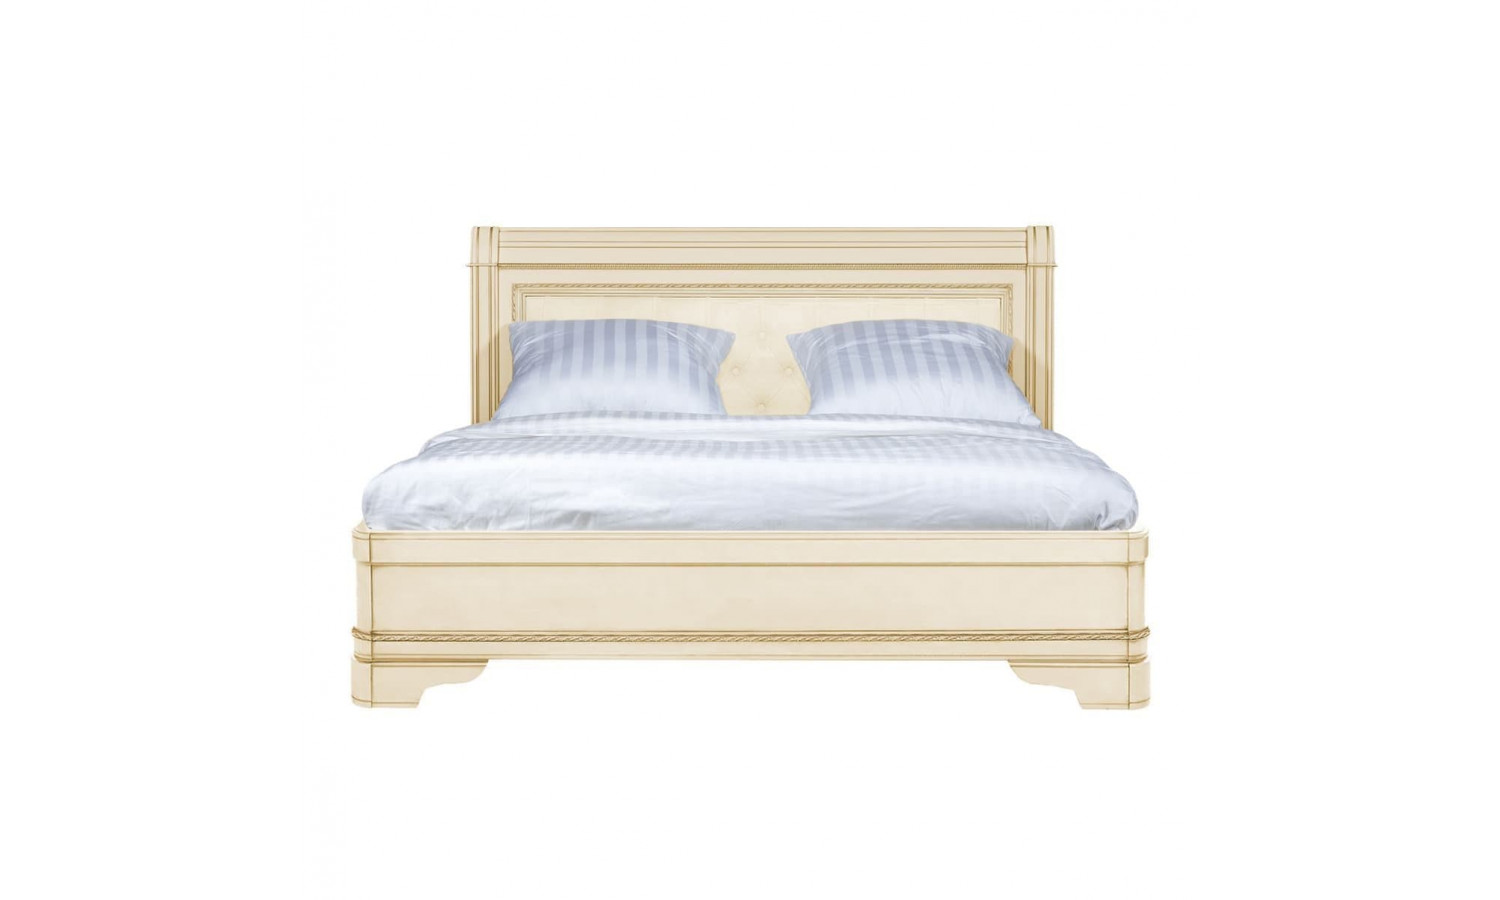 Кровать 160x200 с мягкой спинкой Палермо Ваниль/Патина Золото со структрой дерева